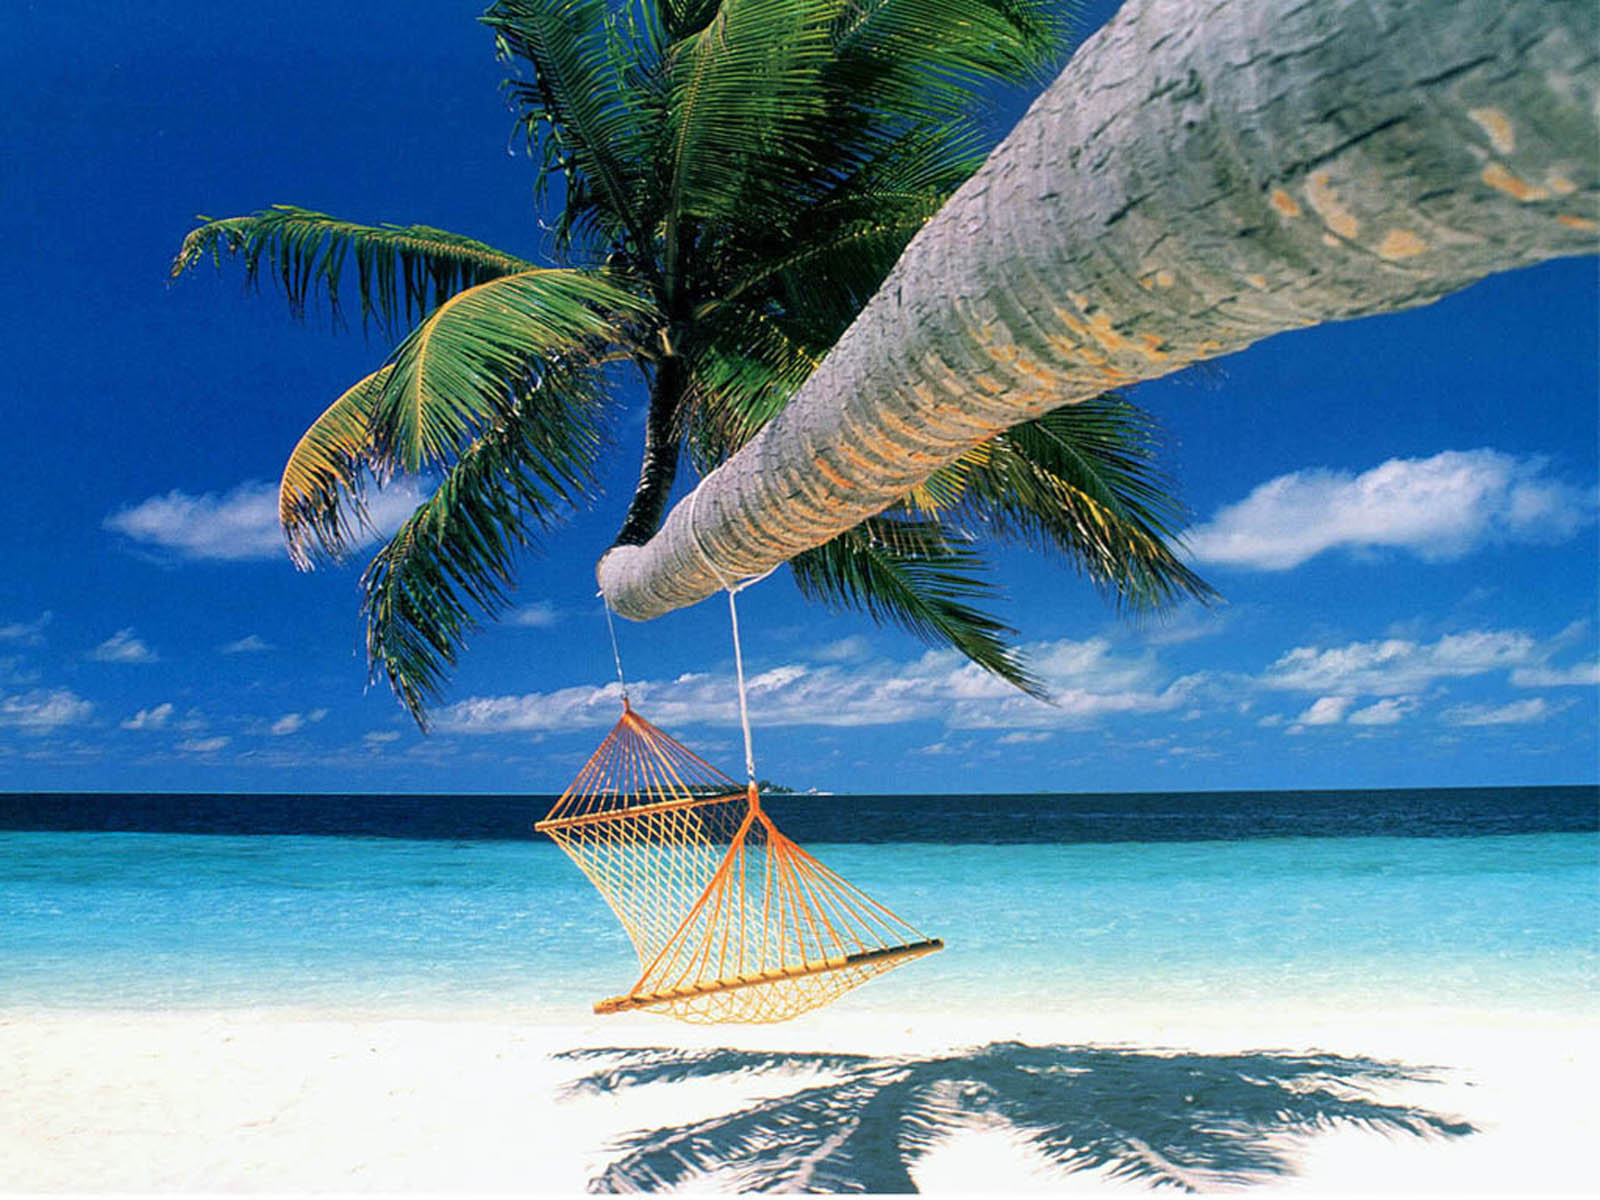 코코넛 나무 벽지,카리브해,나무,야자수,휴가,자연 경관